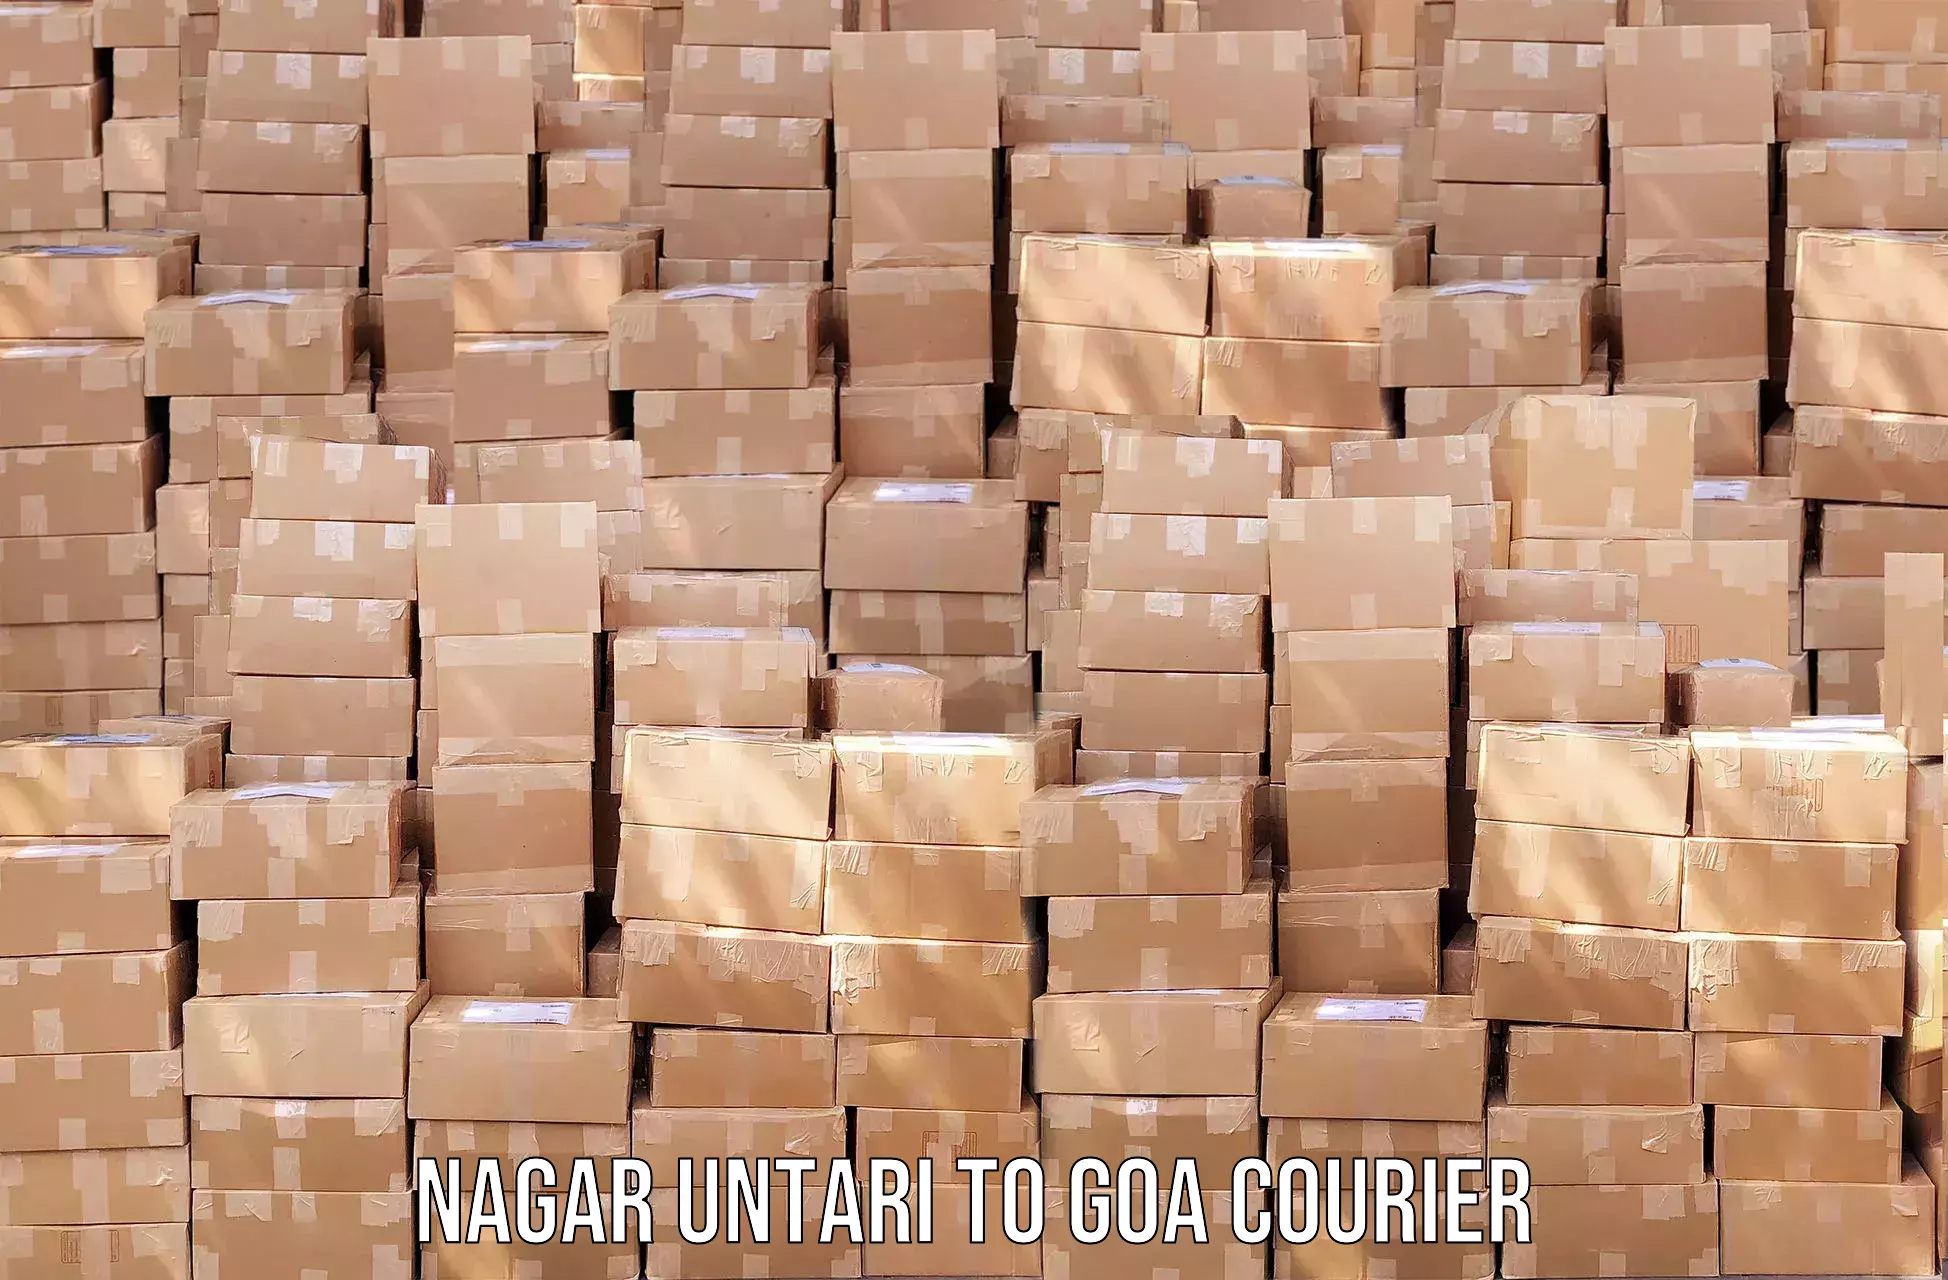 Courier app Nagar Untari to IIT Goa